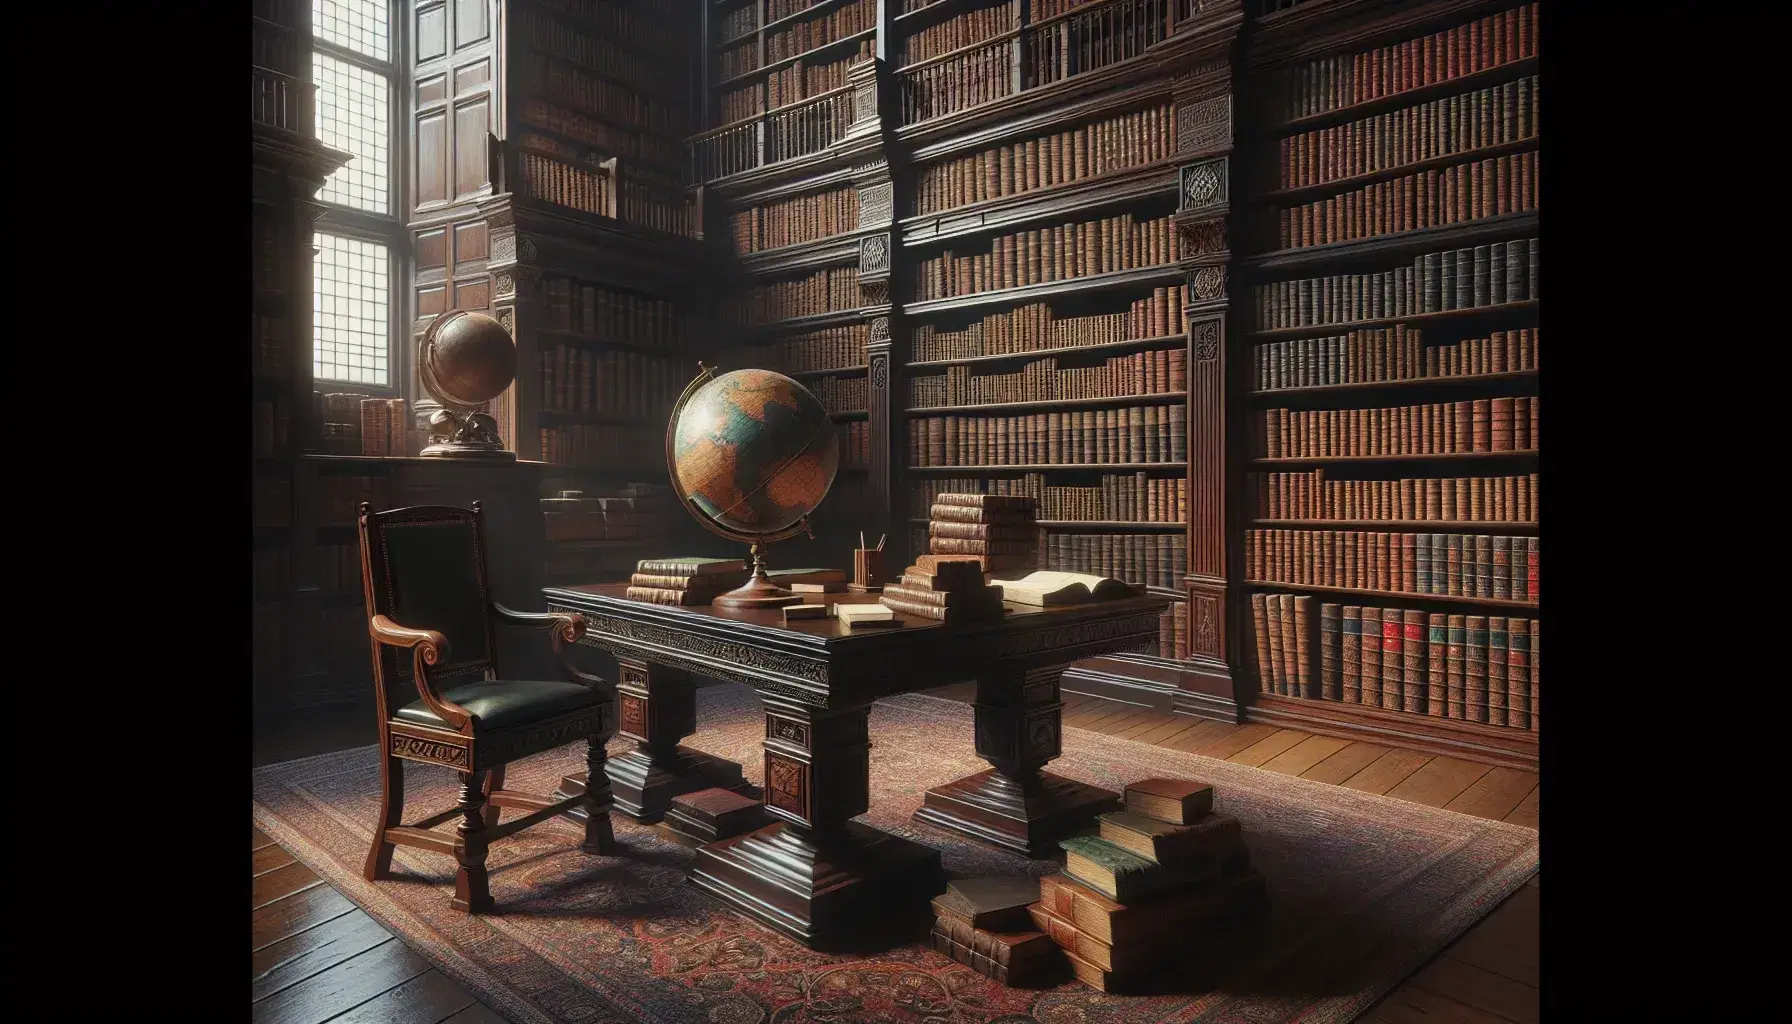 Biblioteca antigua con estanterías de madera oscura llenas de libros encuadernados en cuero, mesa central con libros abiertos, globo antiguo y silla con cojín de terciopelo verde.